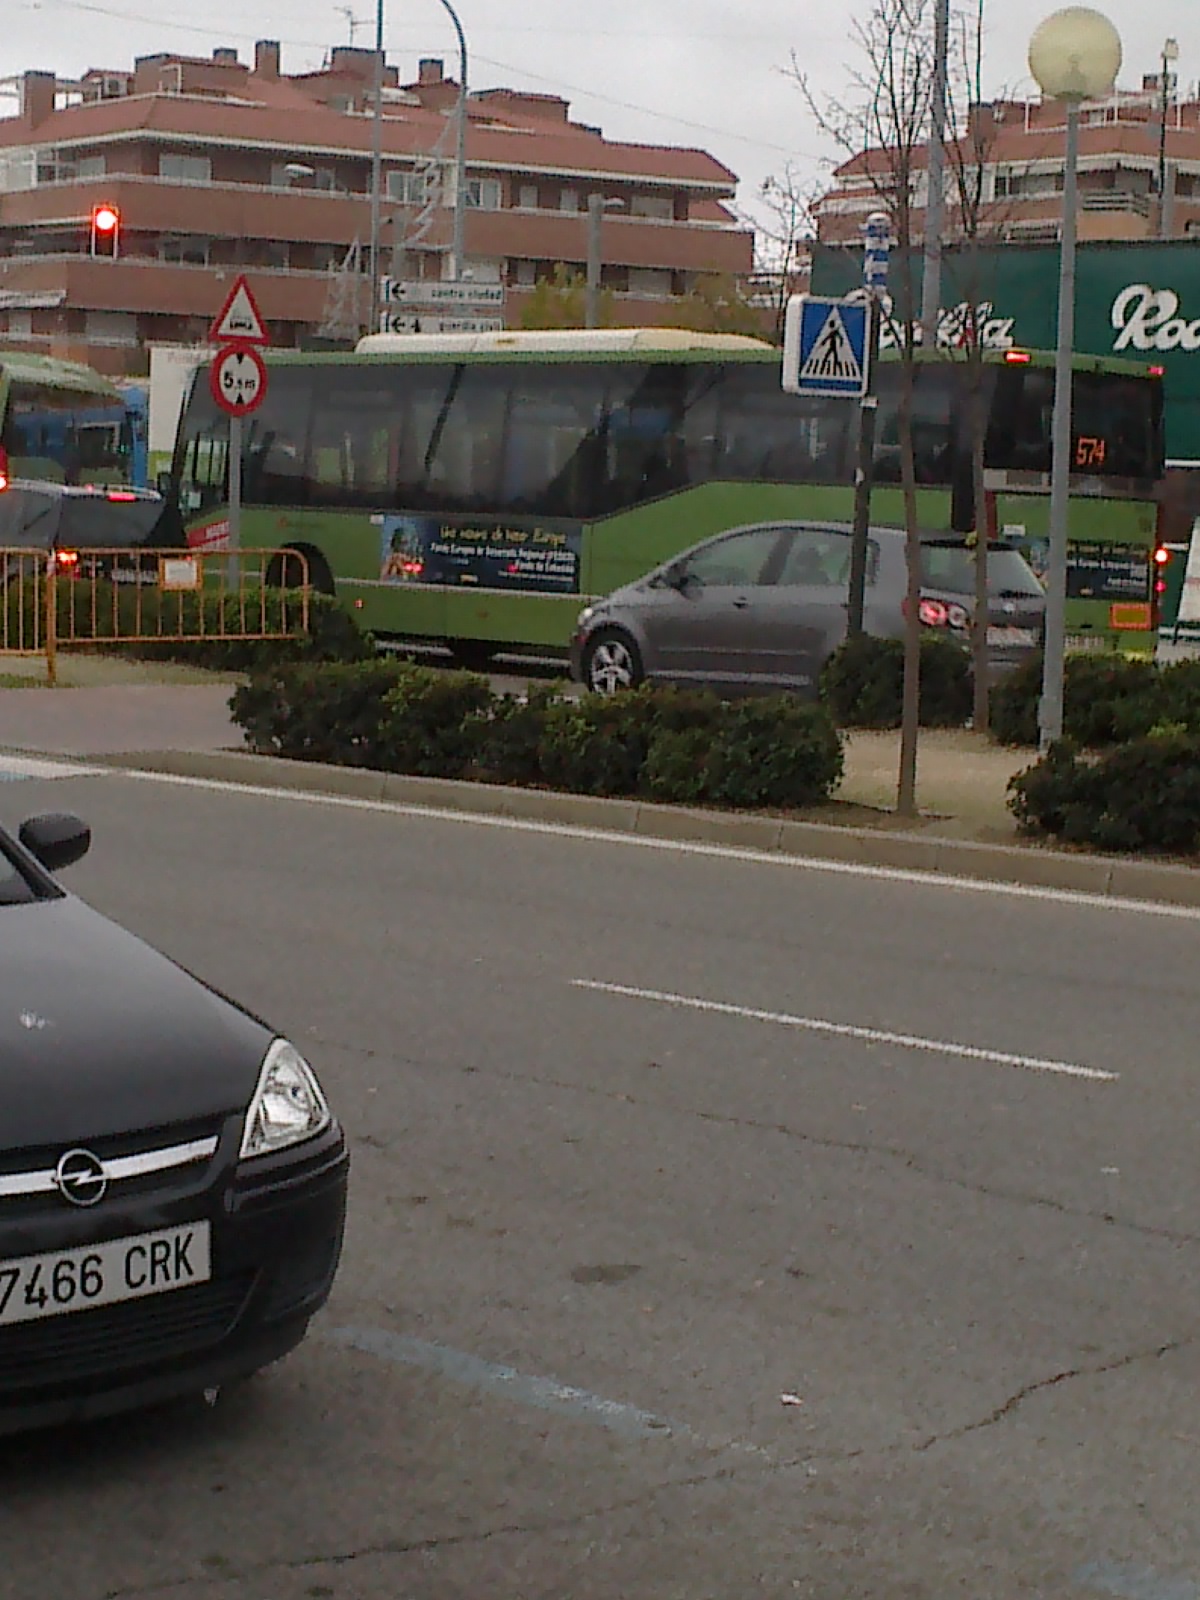 Lateral d'autobus, amb la posterior de la campanya per al fons estructural del desenvolupament sostenible